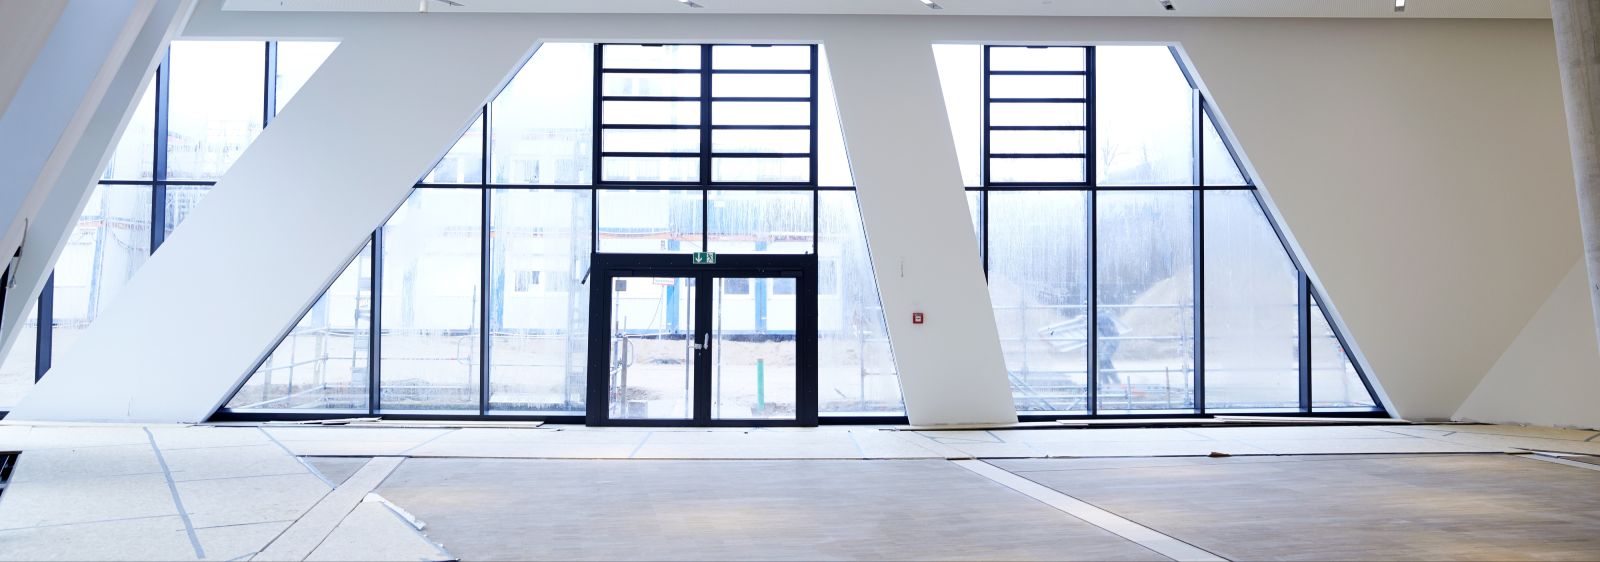 Innenansicht des Eingangsbereichs: Der Neubau wurde vom Architekten Daniel Libeskind zusammen mit Studenten entworfen. Das Gebäude wird ab sofort für die Lehre und für kulturelle Ereignisse genutzt.